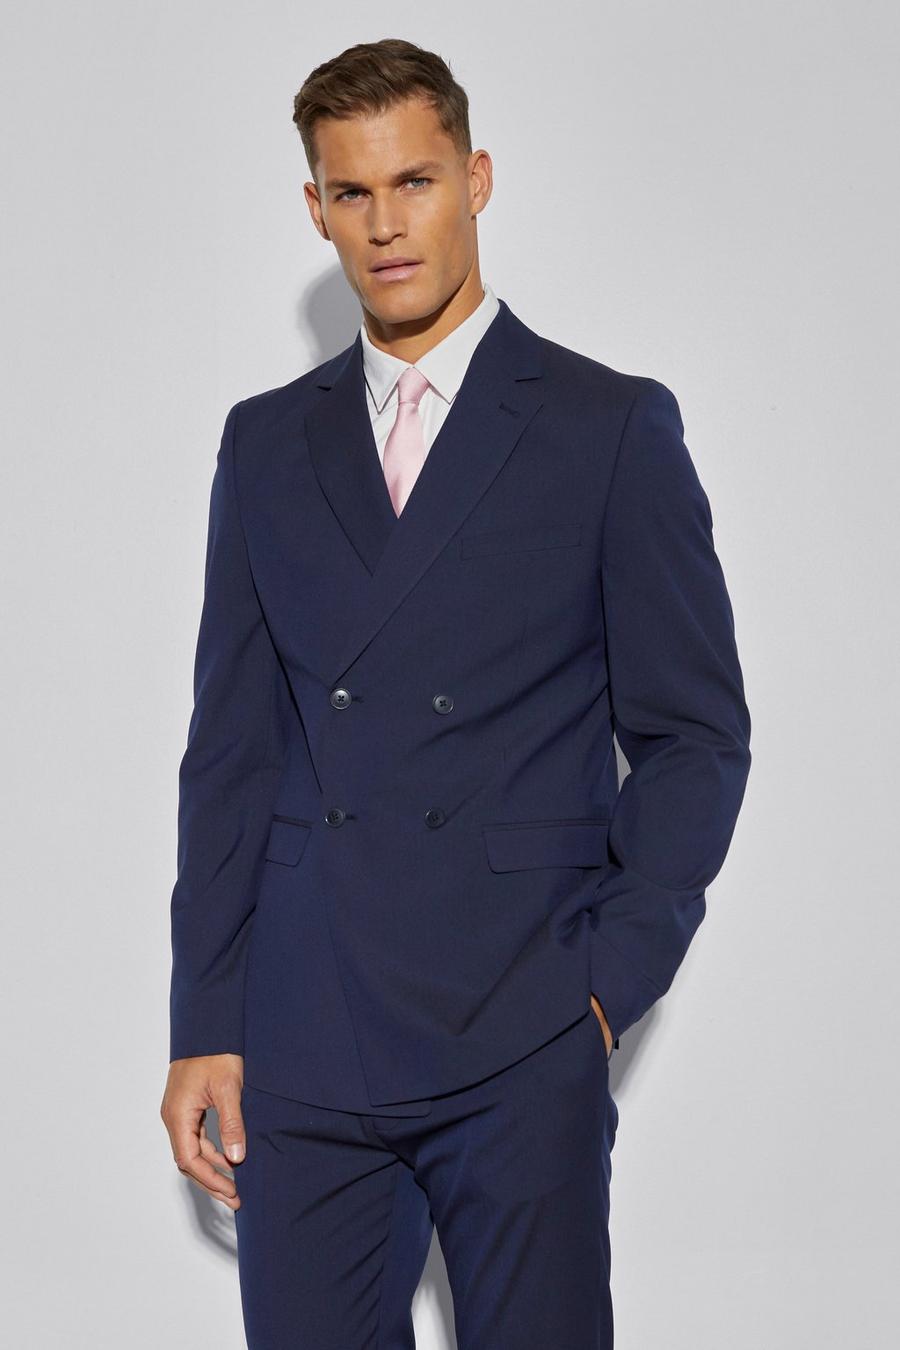 נייבי blu oltremare ז'קט חליפה בגזרה צרה עם דשים כפולים, לגברים גבוהים